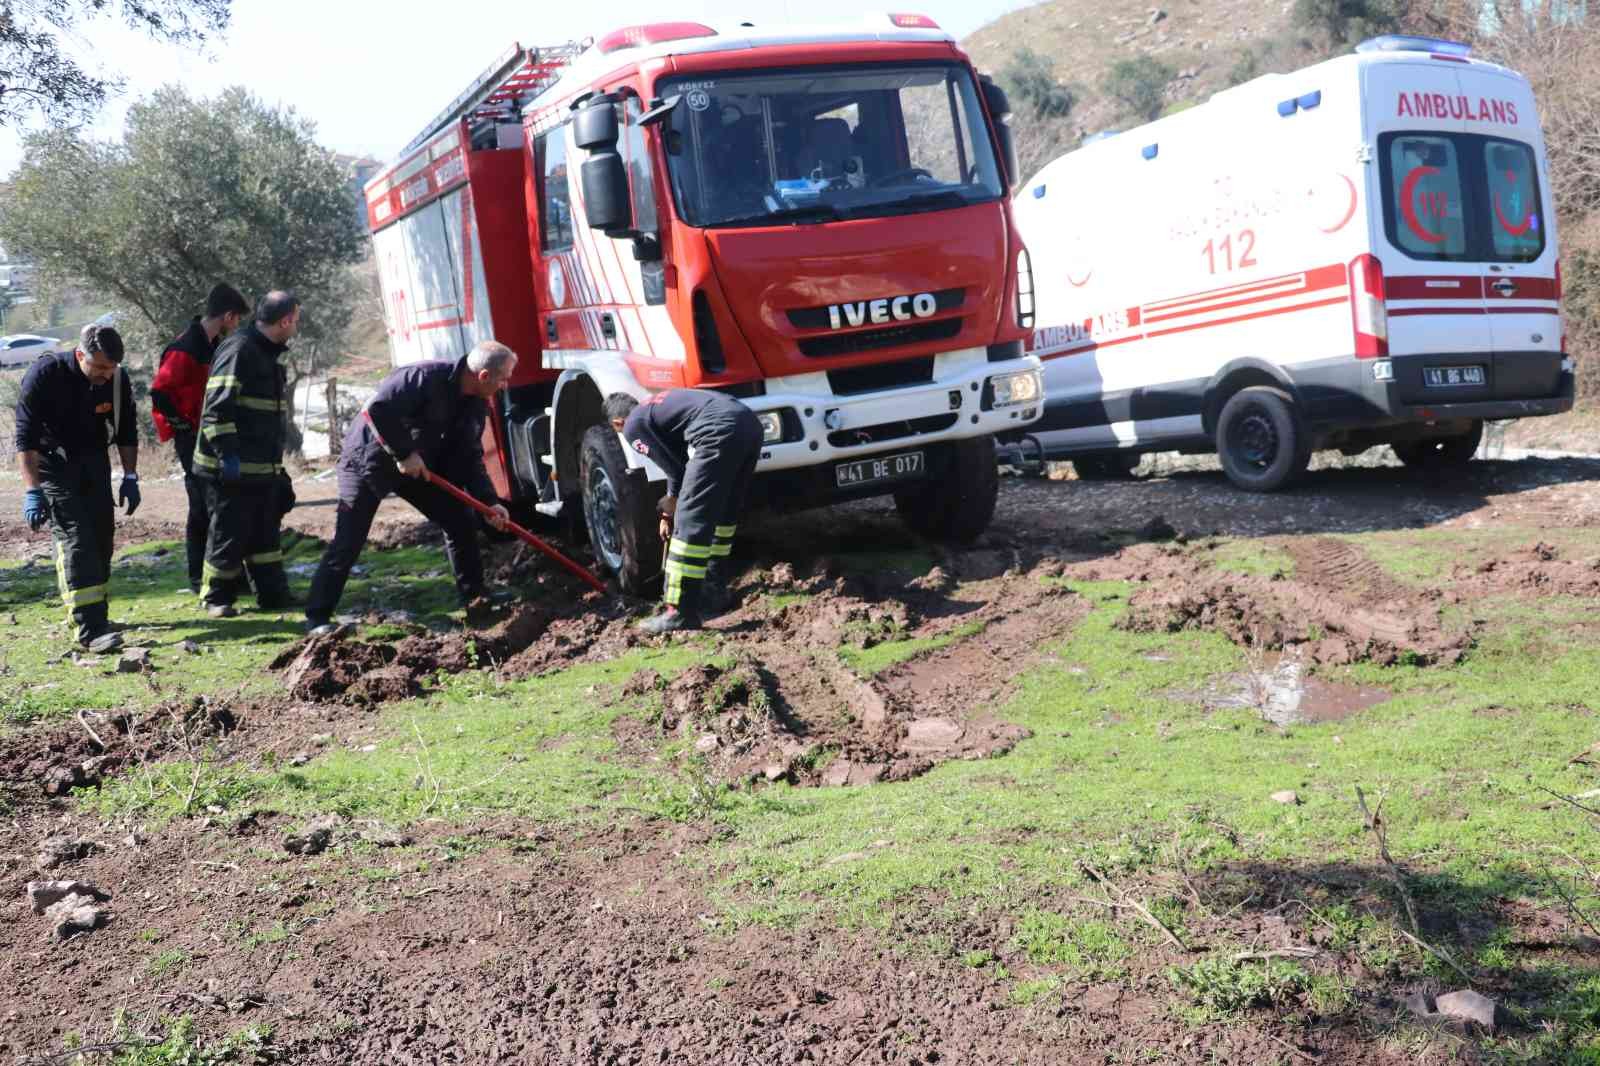 Hem ambulans hem de kurtarmak için gelen itfaiye aracı çamura saplandı #kocaeli